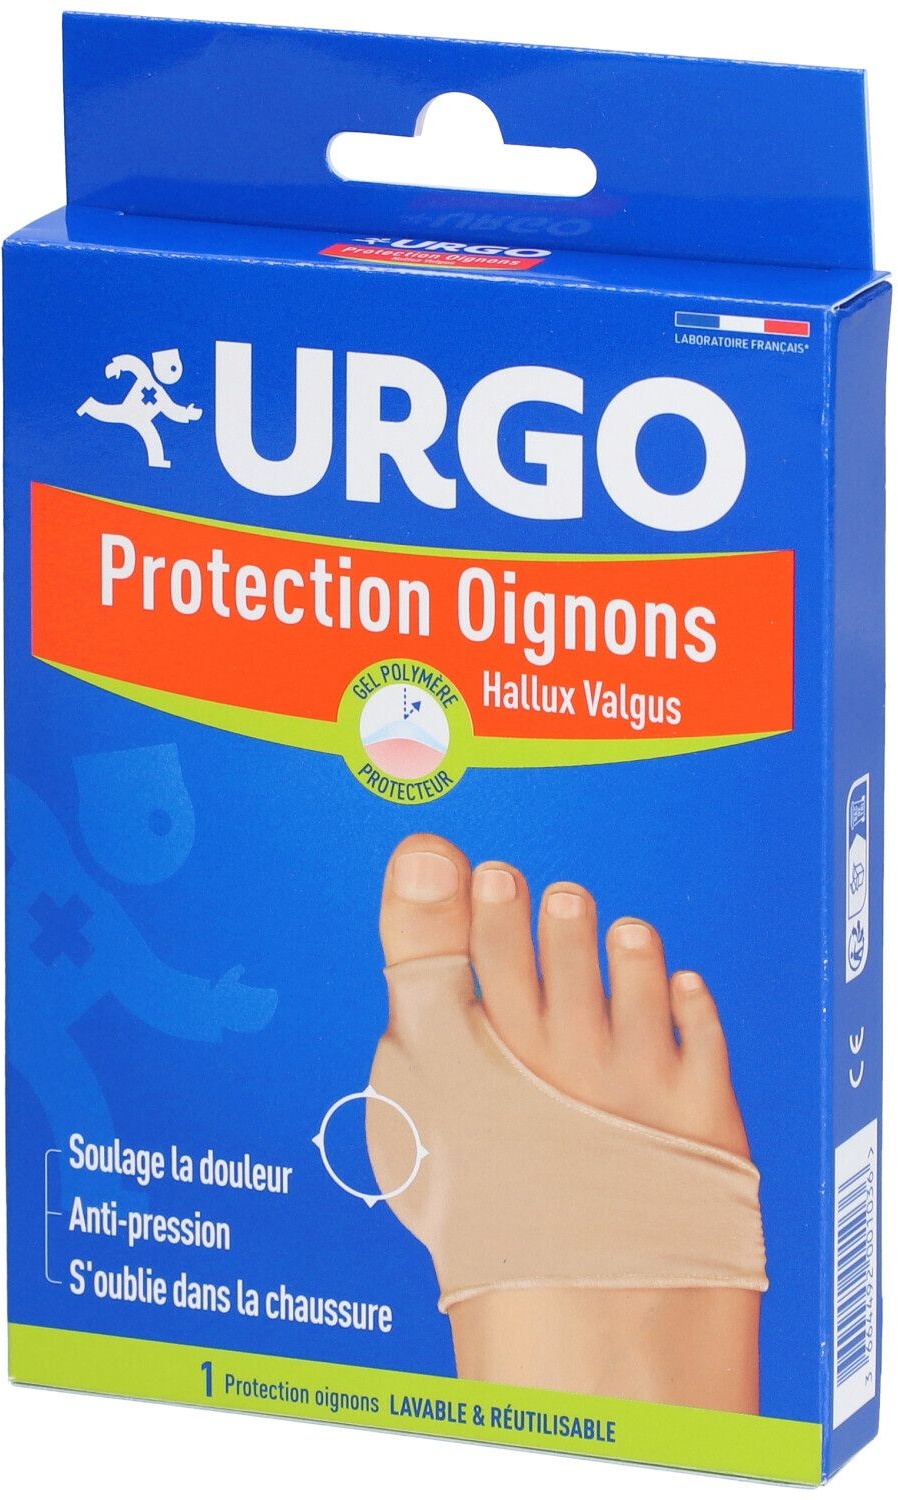 URGO Protection Oignons - Bandage de protection pour Hallux valgus bandage(s)